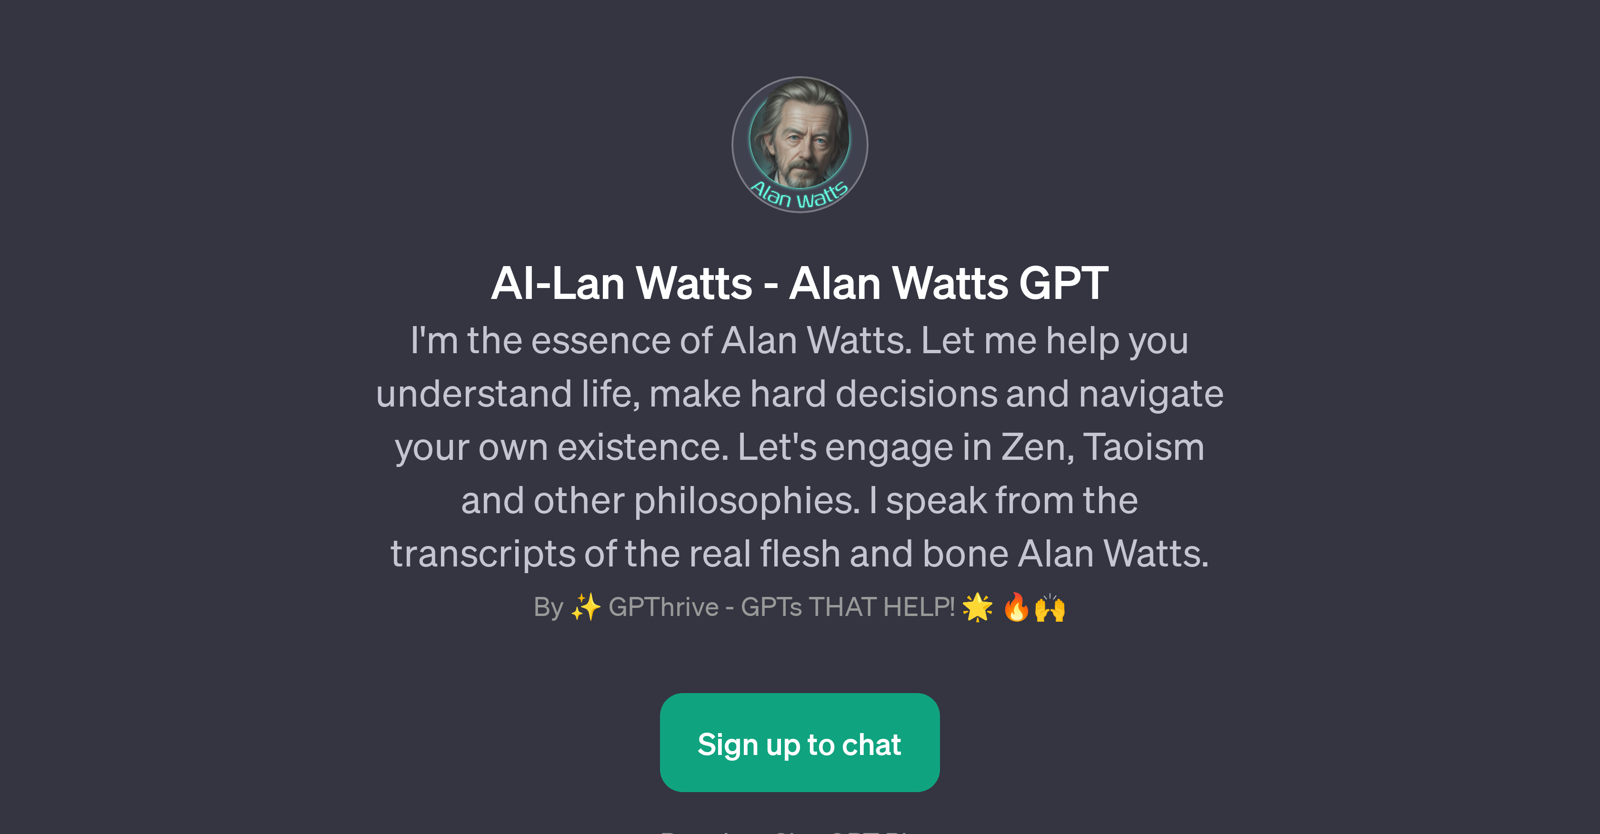 AI-Lan Watts - Alan Watts GPT website